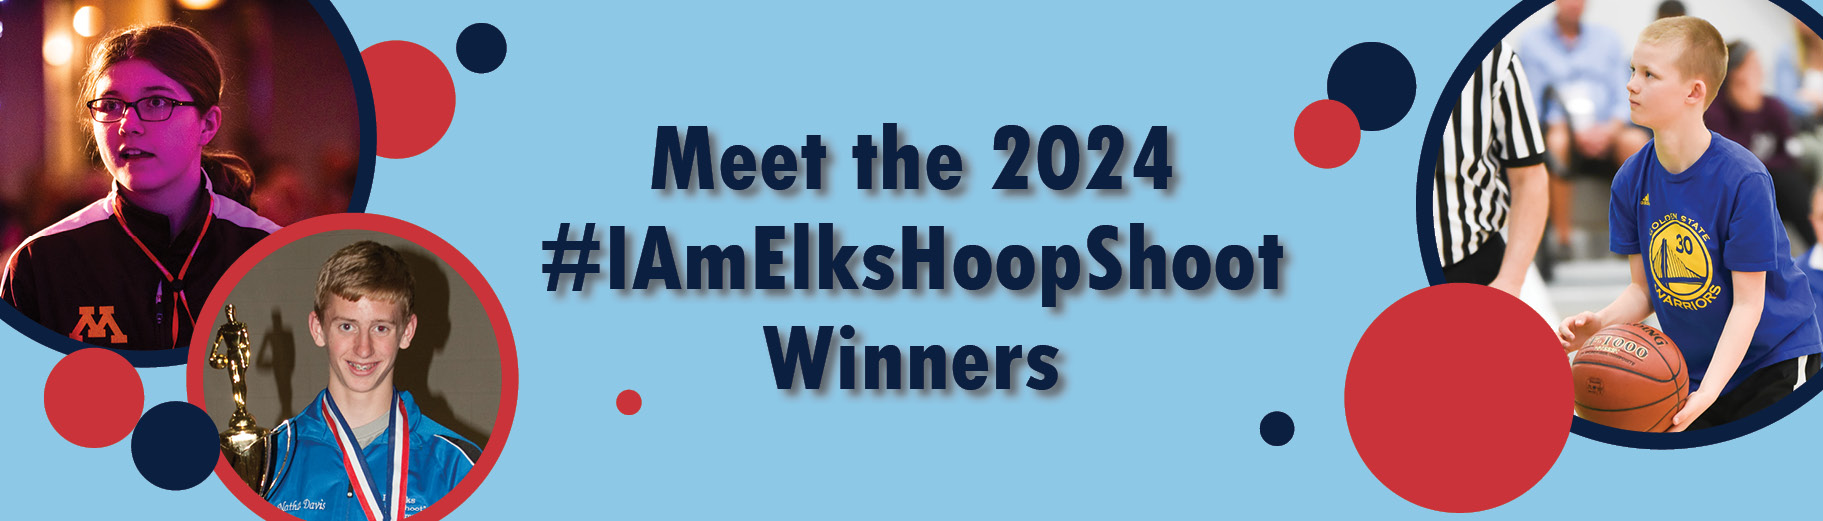 2024 #IAmElksHoopShootWinners